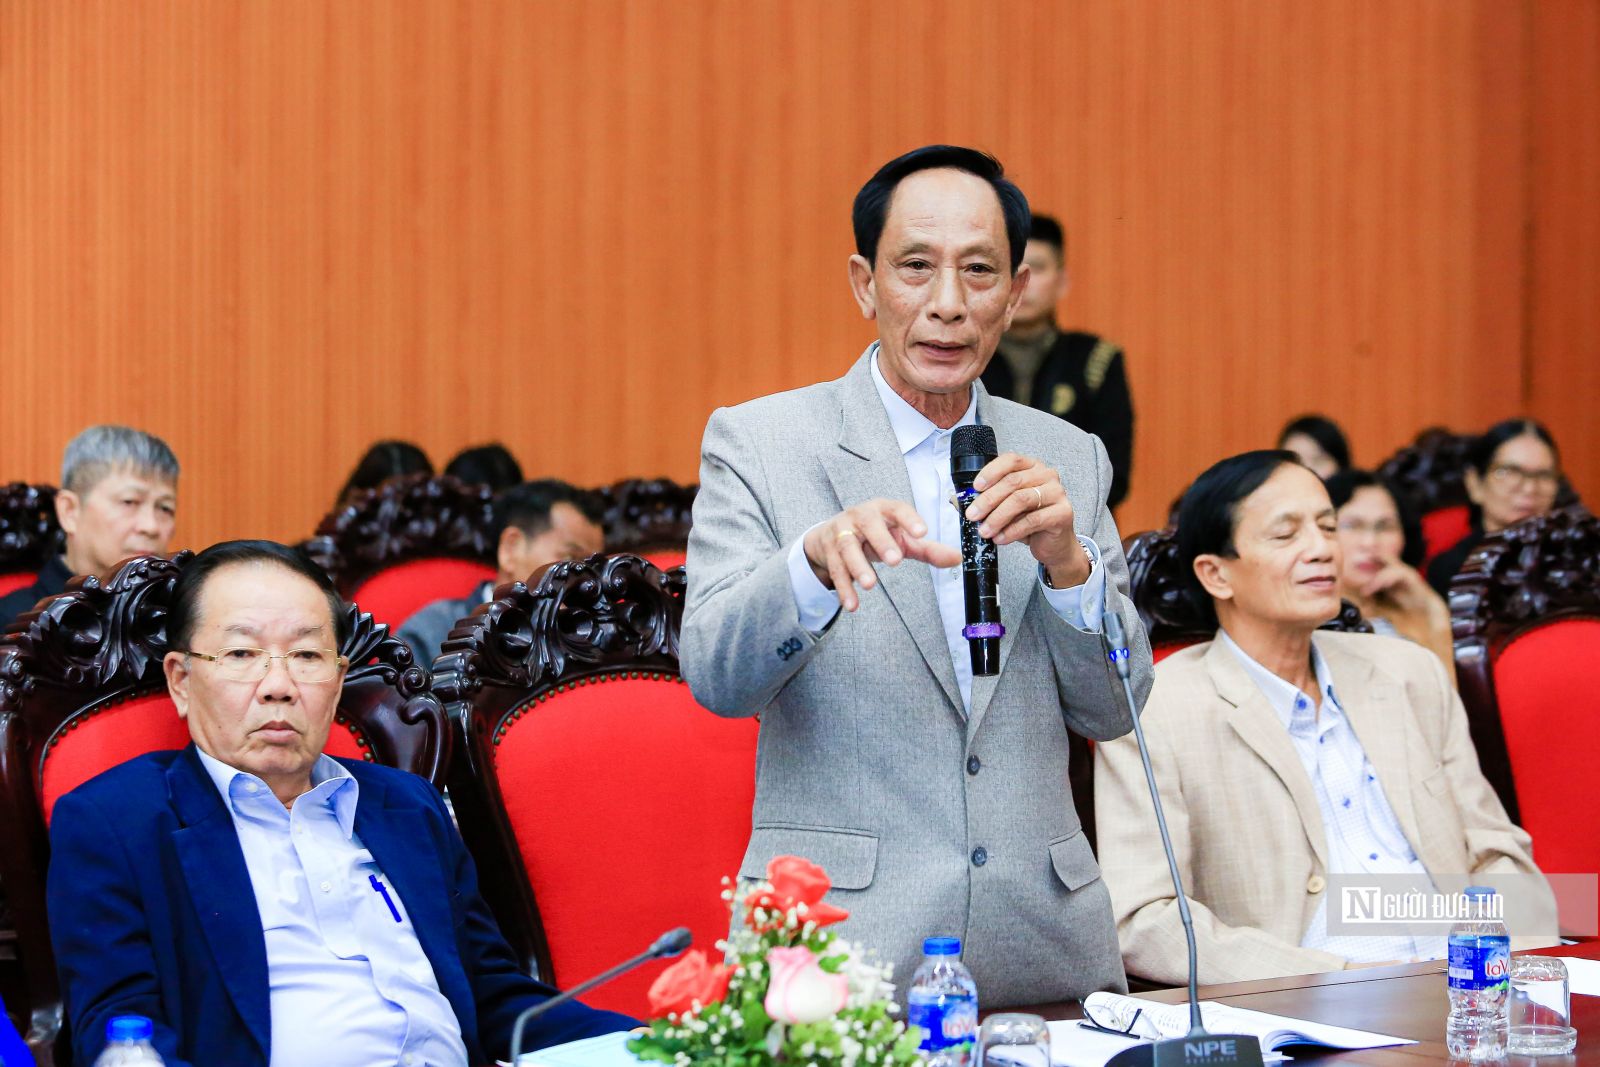 Hội Luật gia Việt Nam tổ chức tập huấn công tác một số lĩnh vực trọng tâm